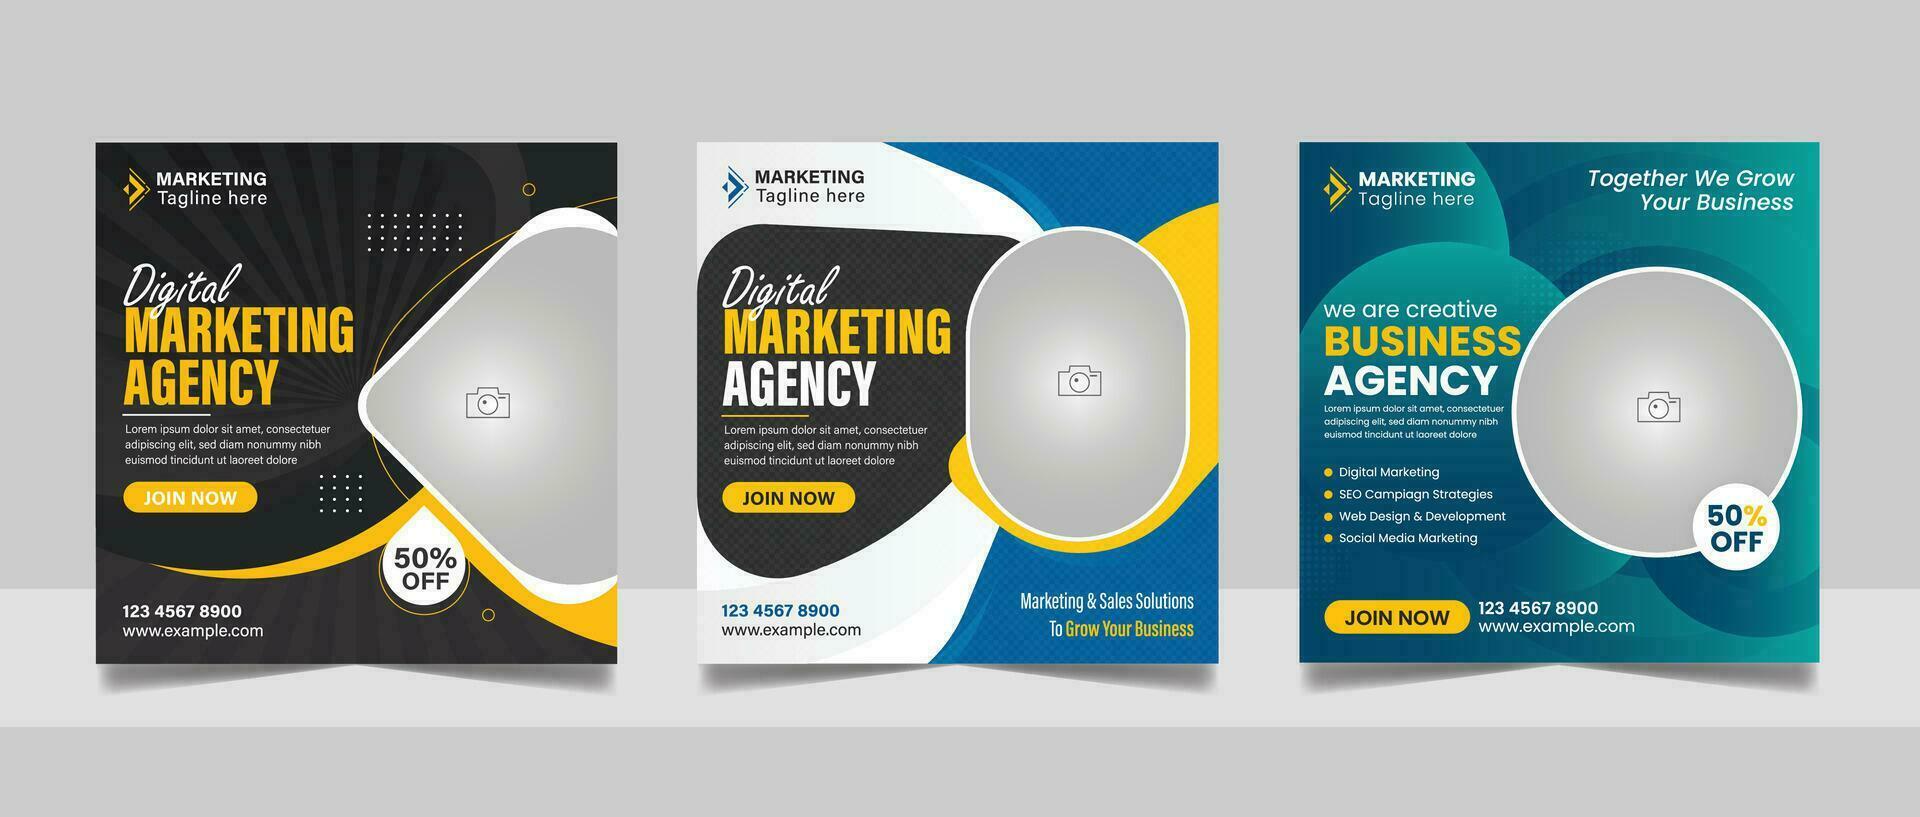 digital márketing agencia en línea seminario web social medios de comunicación enviar colocar, corporativo negocio promoción web bandera, cuadrado volantes diseño modelo vector